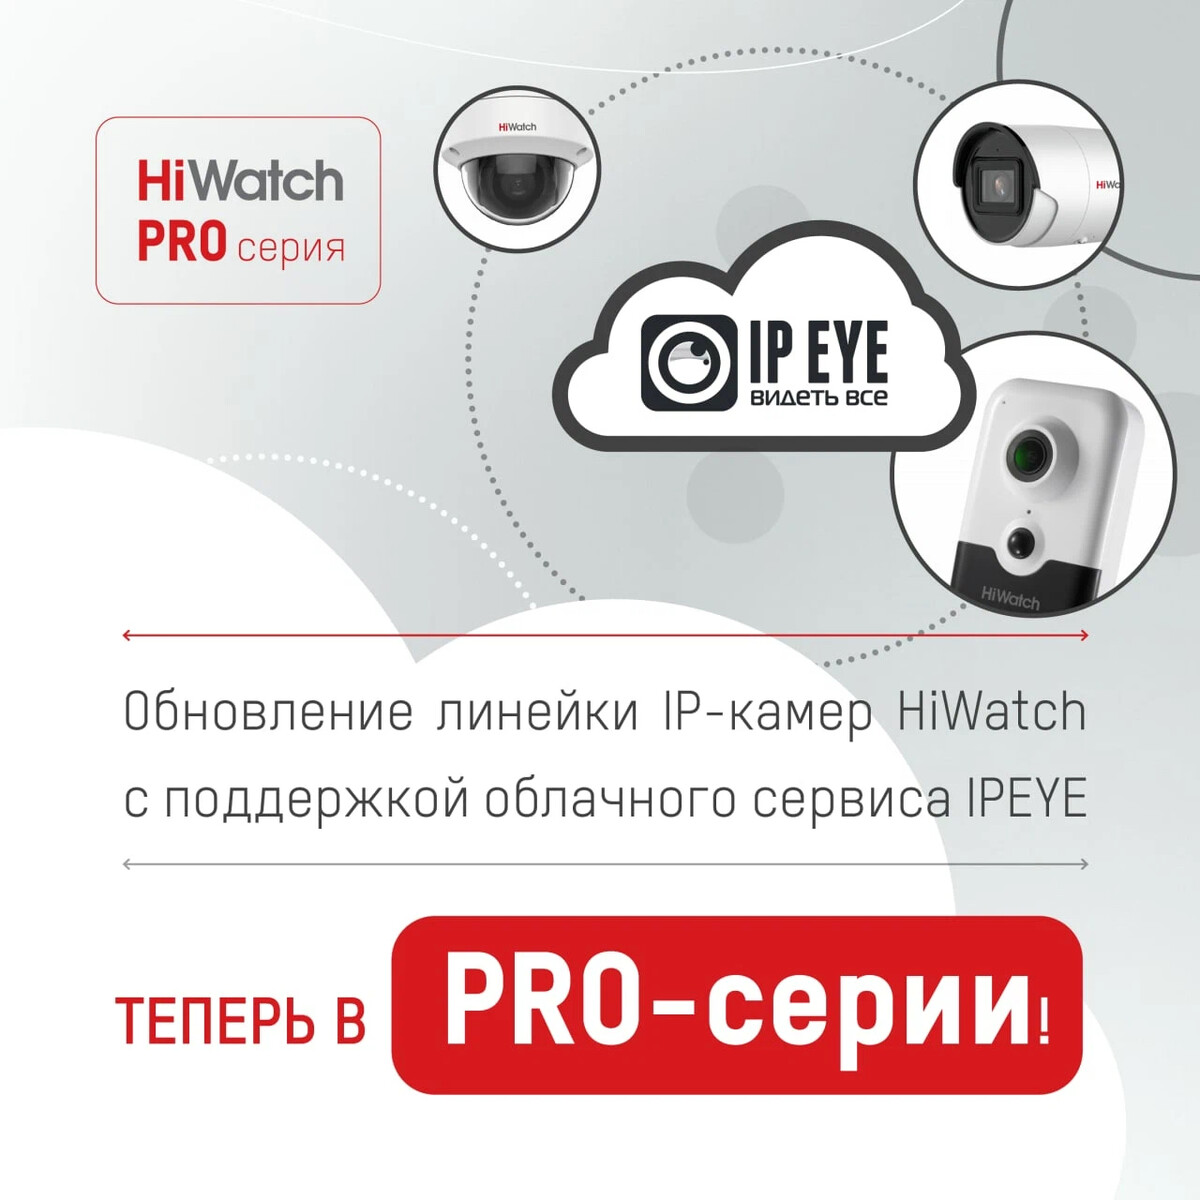 Гк навигатор. HIWATCH бренд. HIWATCH видеокамера инструкция. Приложение для камер HIWATCH на телефоне.